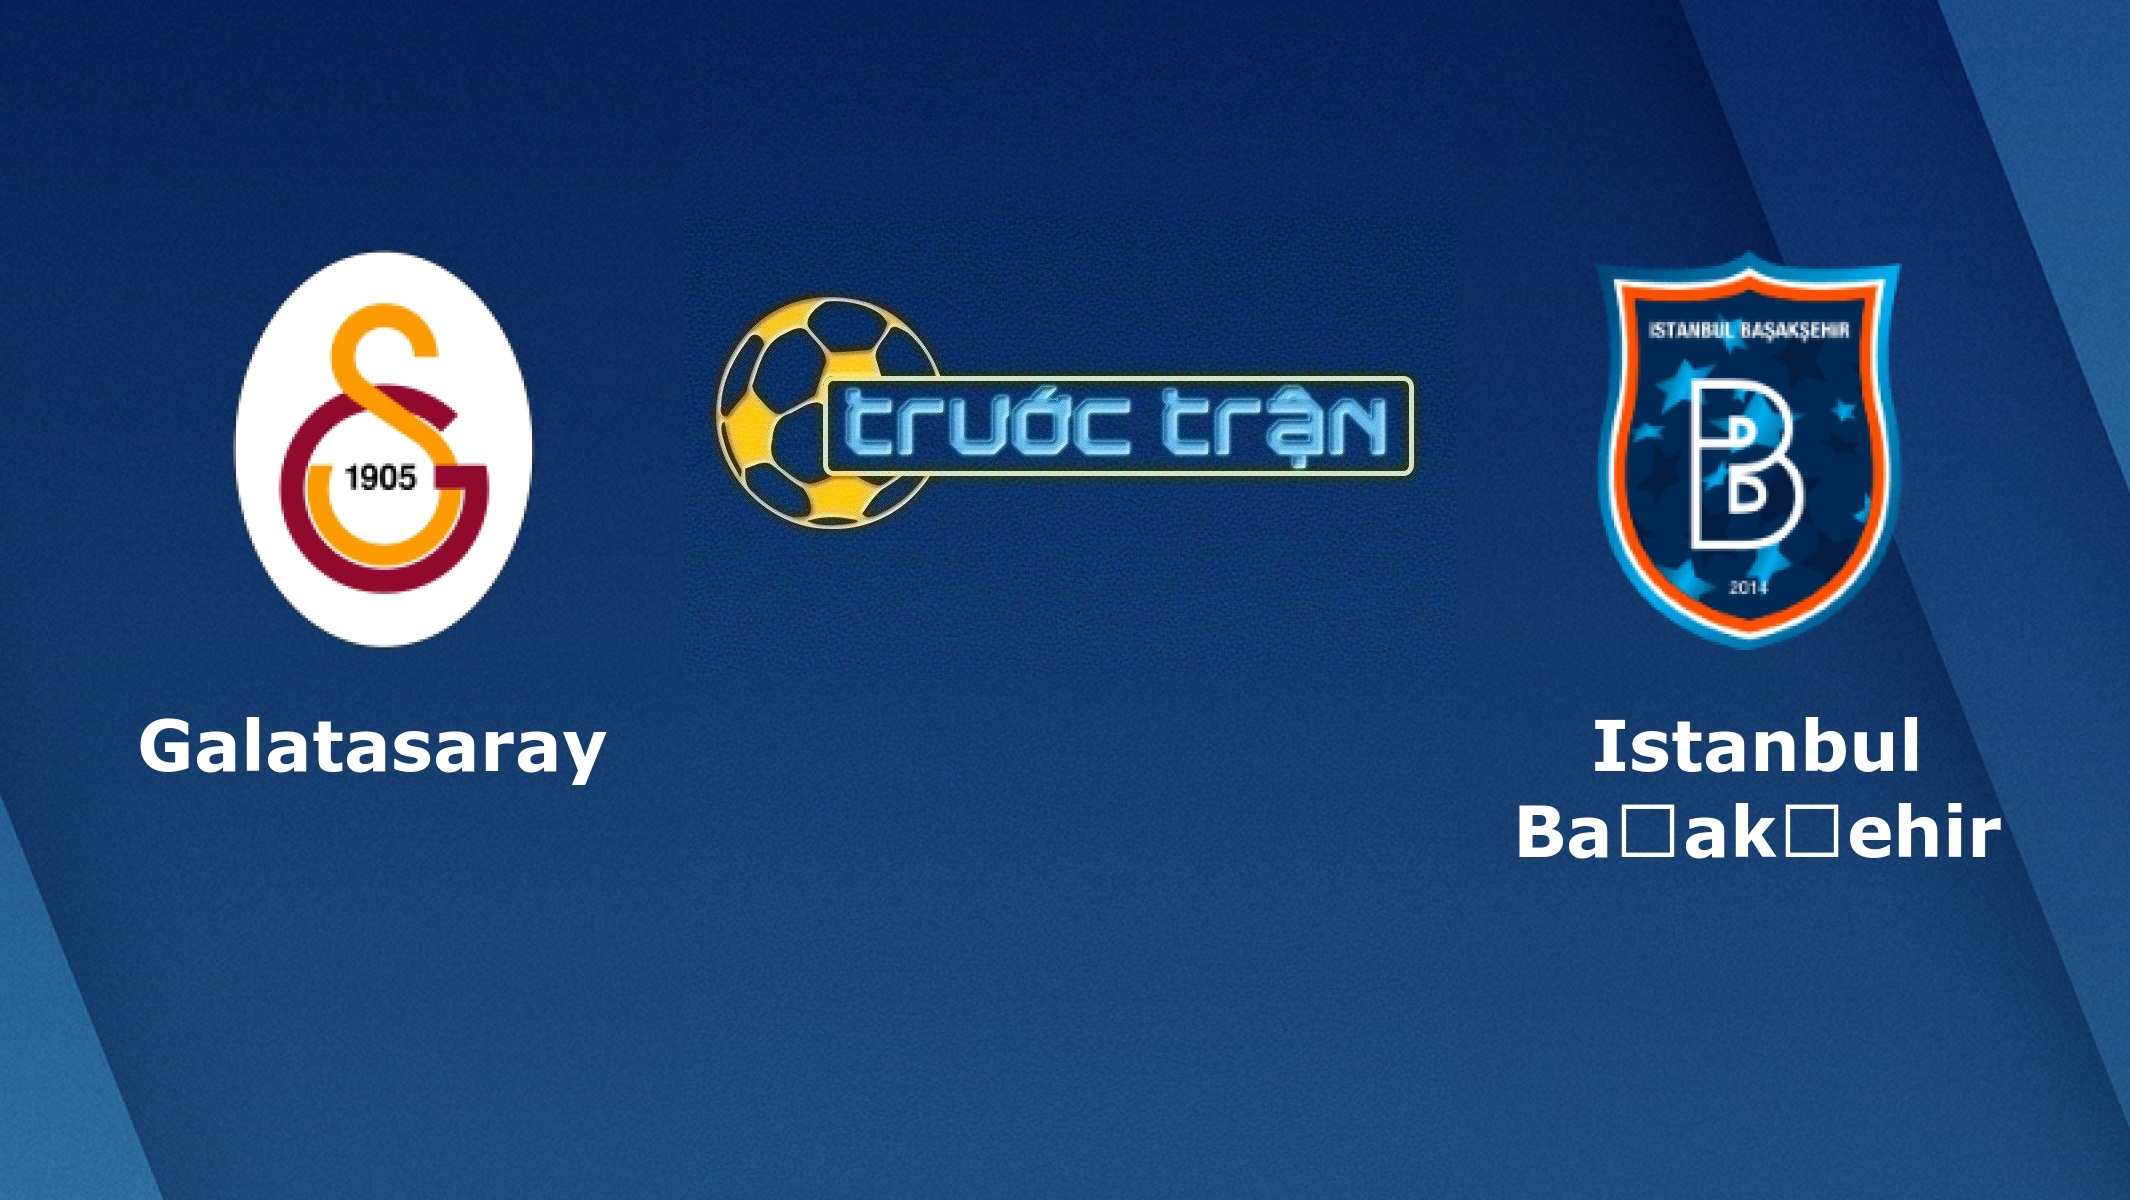 Galatasaray vs Istanbul Basaksehir – Tip kèo bóng đá hôm nay – 23/11